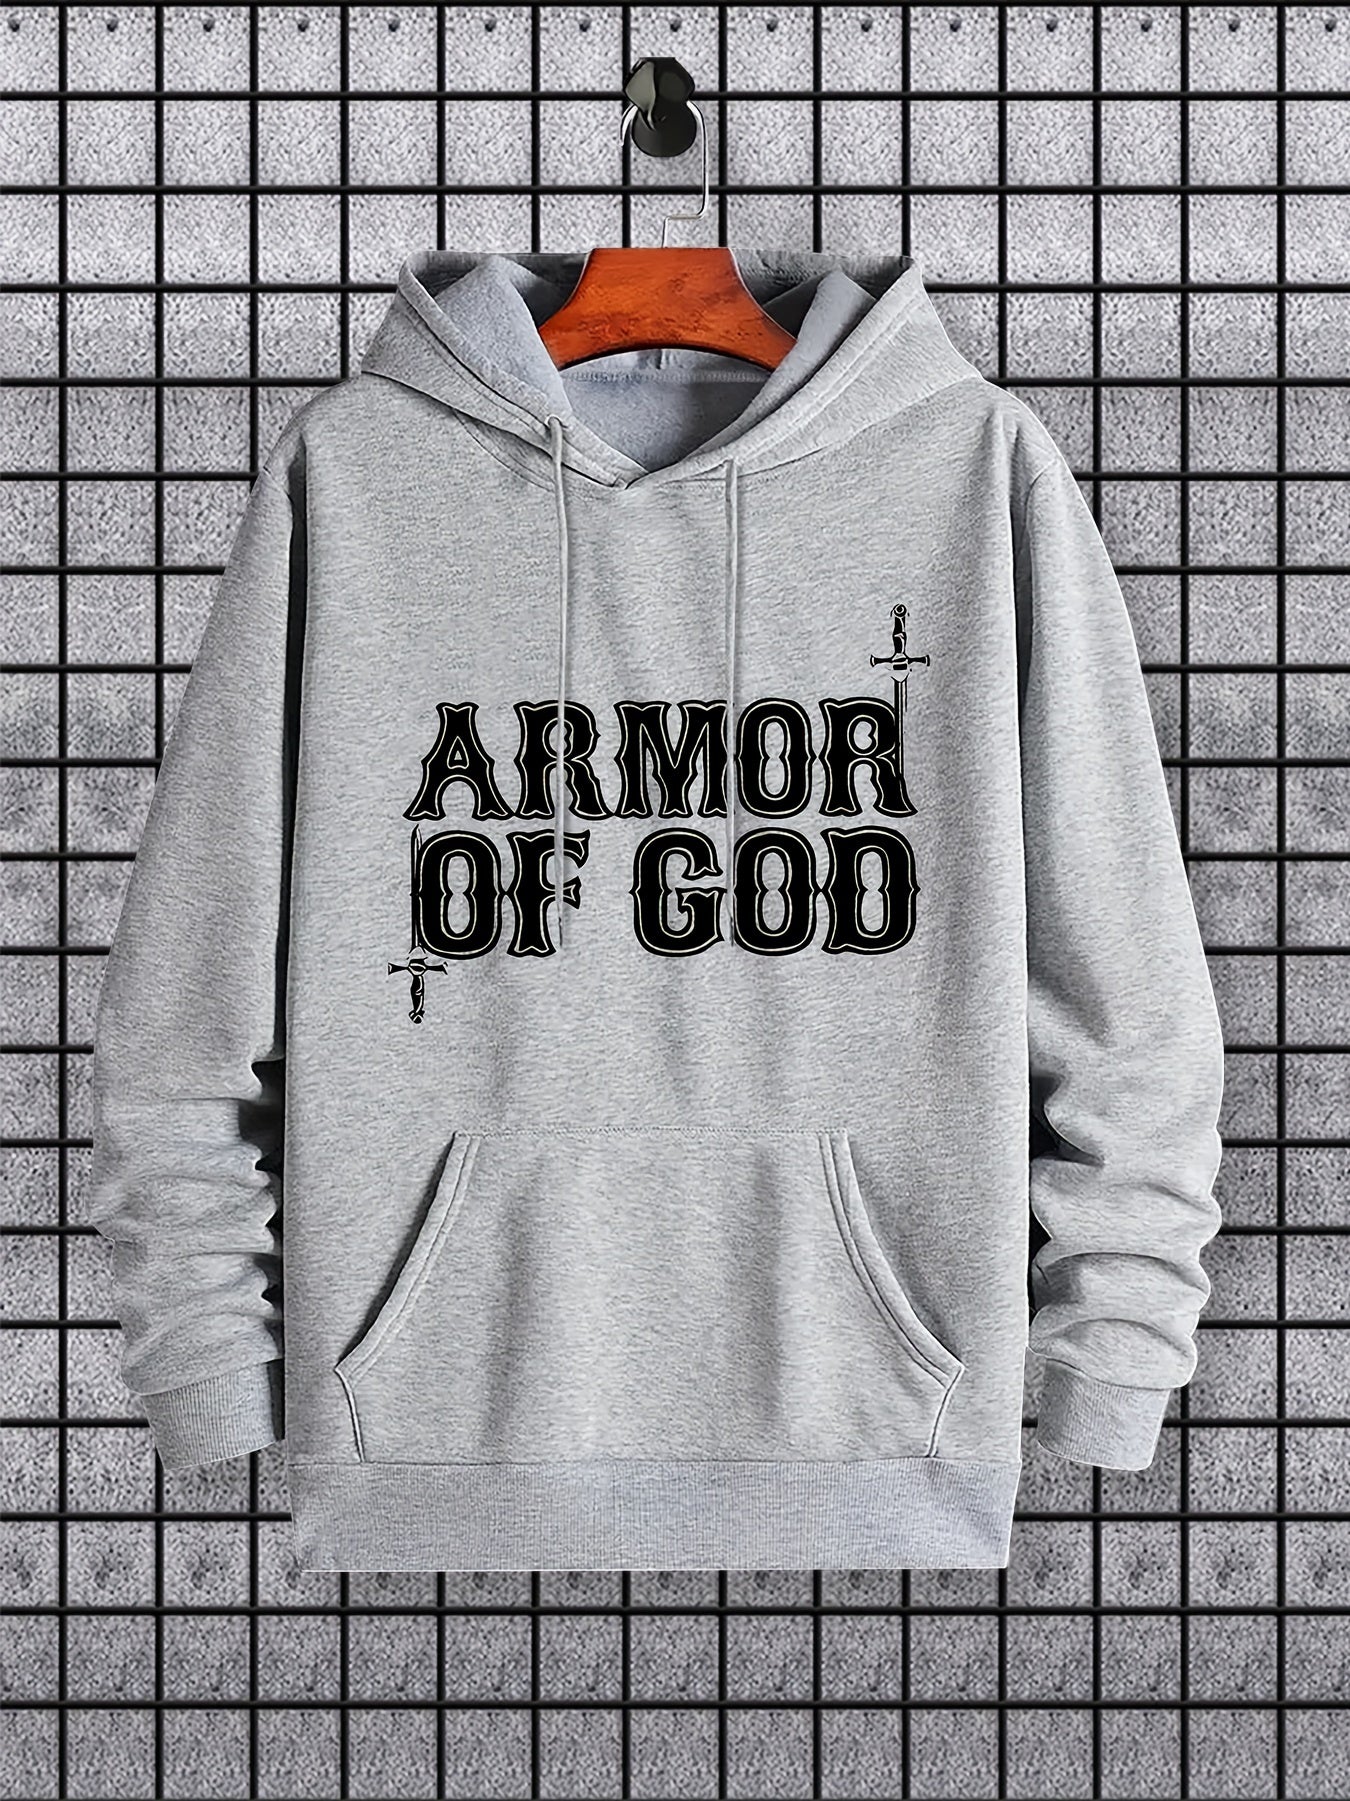 Armor Of God Men's Christian Pullover Hooded Sweatshirt claimedbygoddesigns